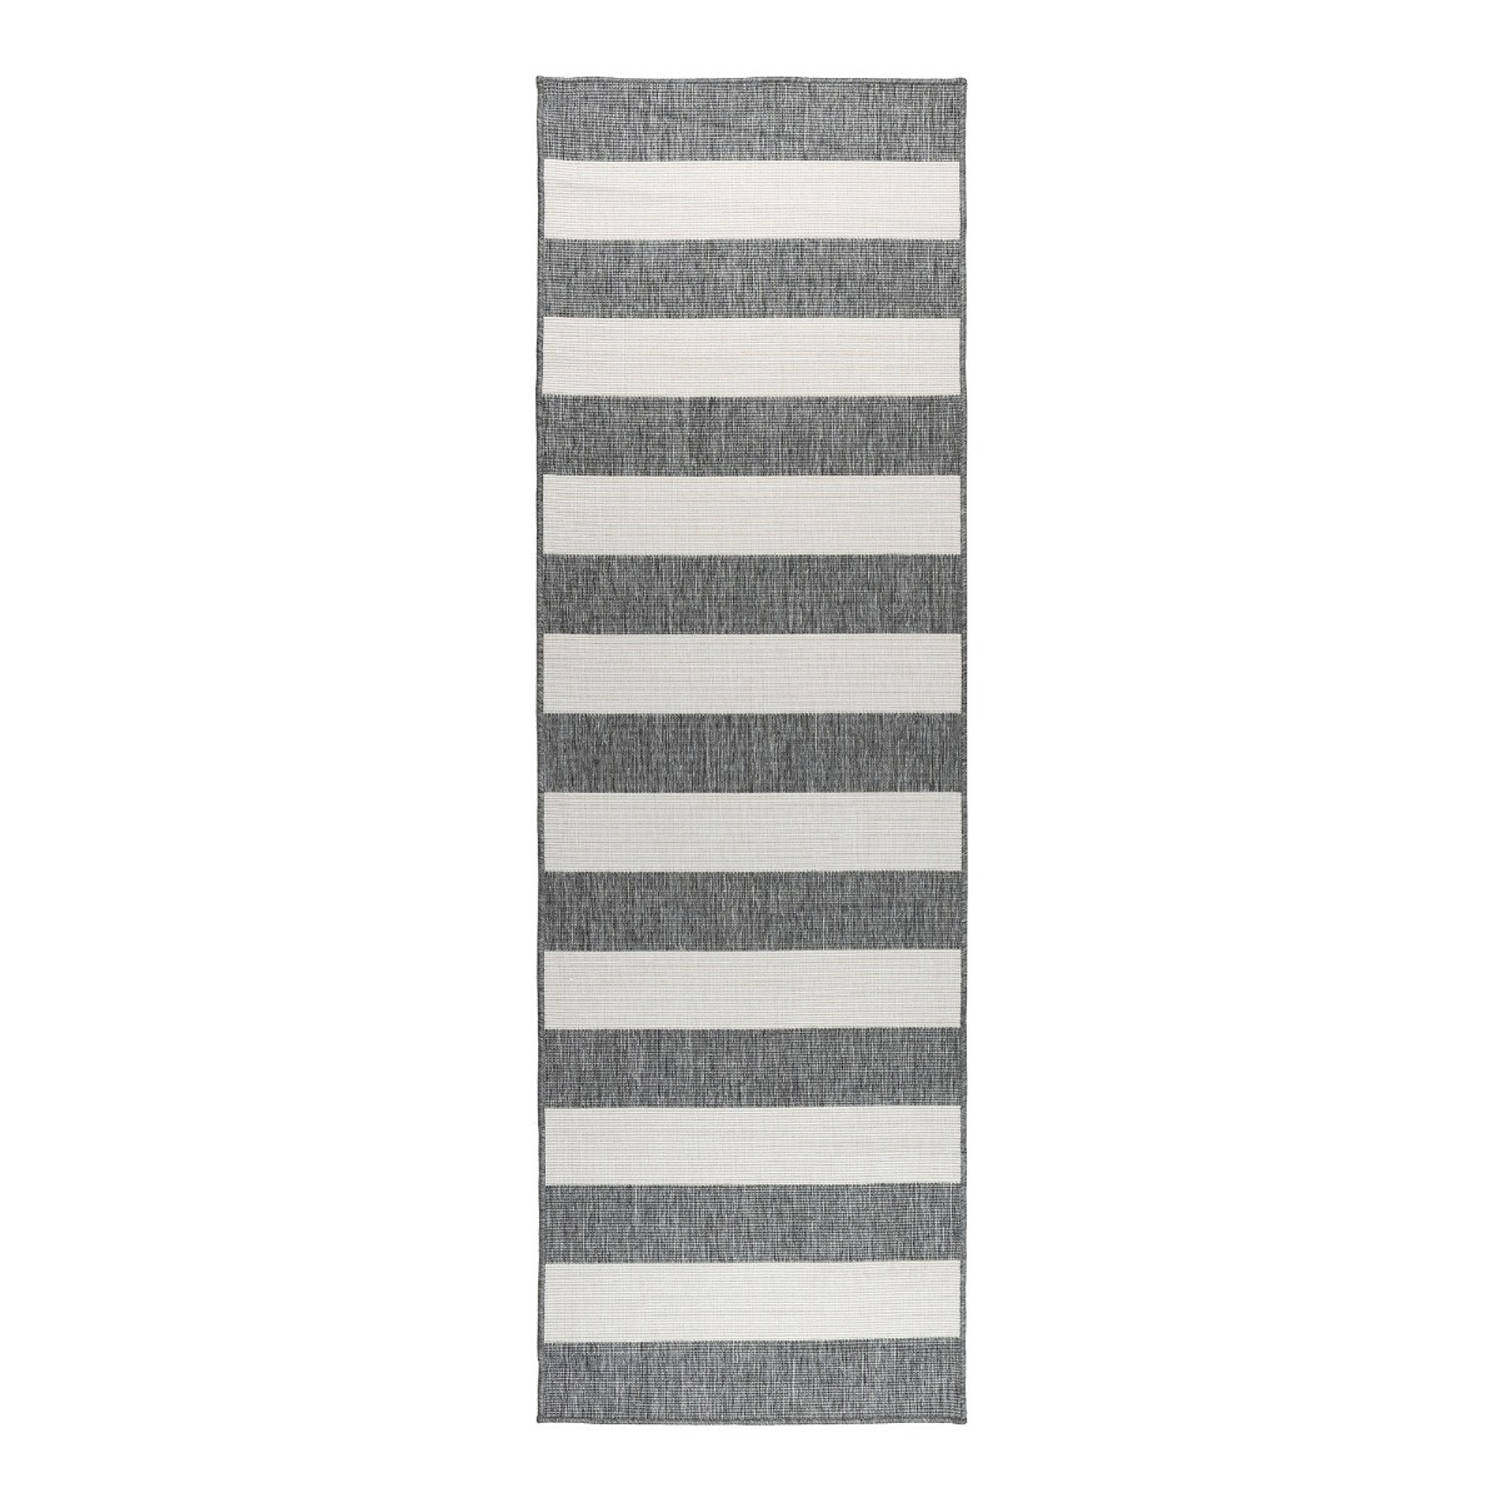 Buiten loper - Balkonkleed Stripes - Grijs/Wit - dubbelzijdig - EVA Interior - 80 x 250cm (M)